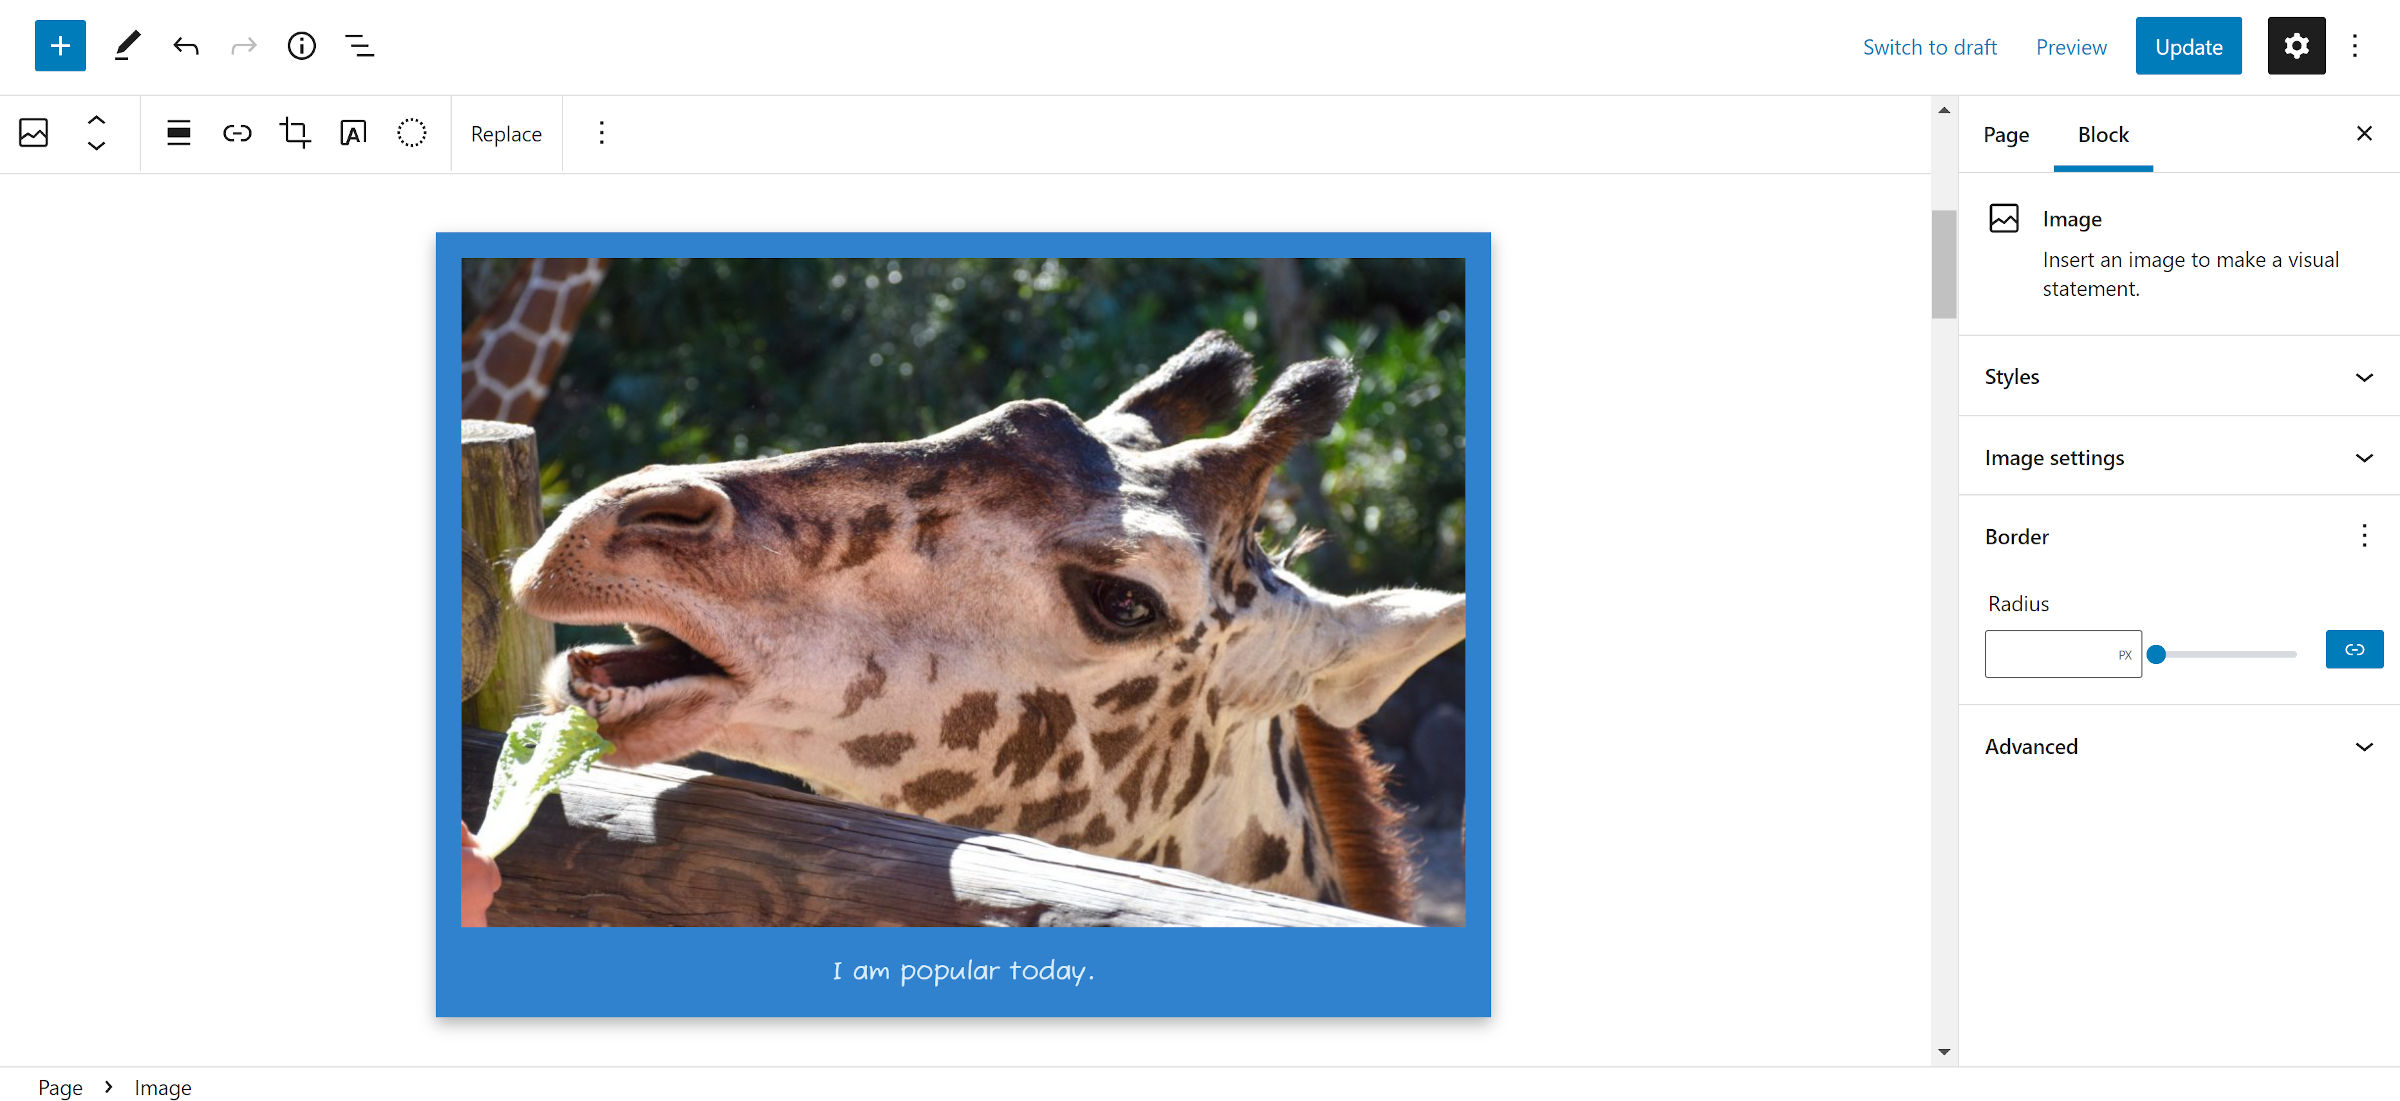 Nell'editor di WordPress, foto di una giraffa in una cornice in stile Polaroid con sfondo blu.